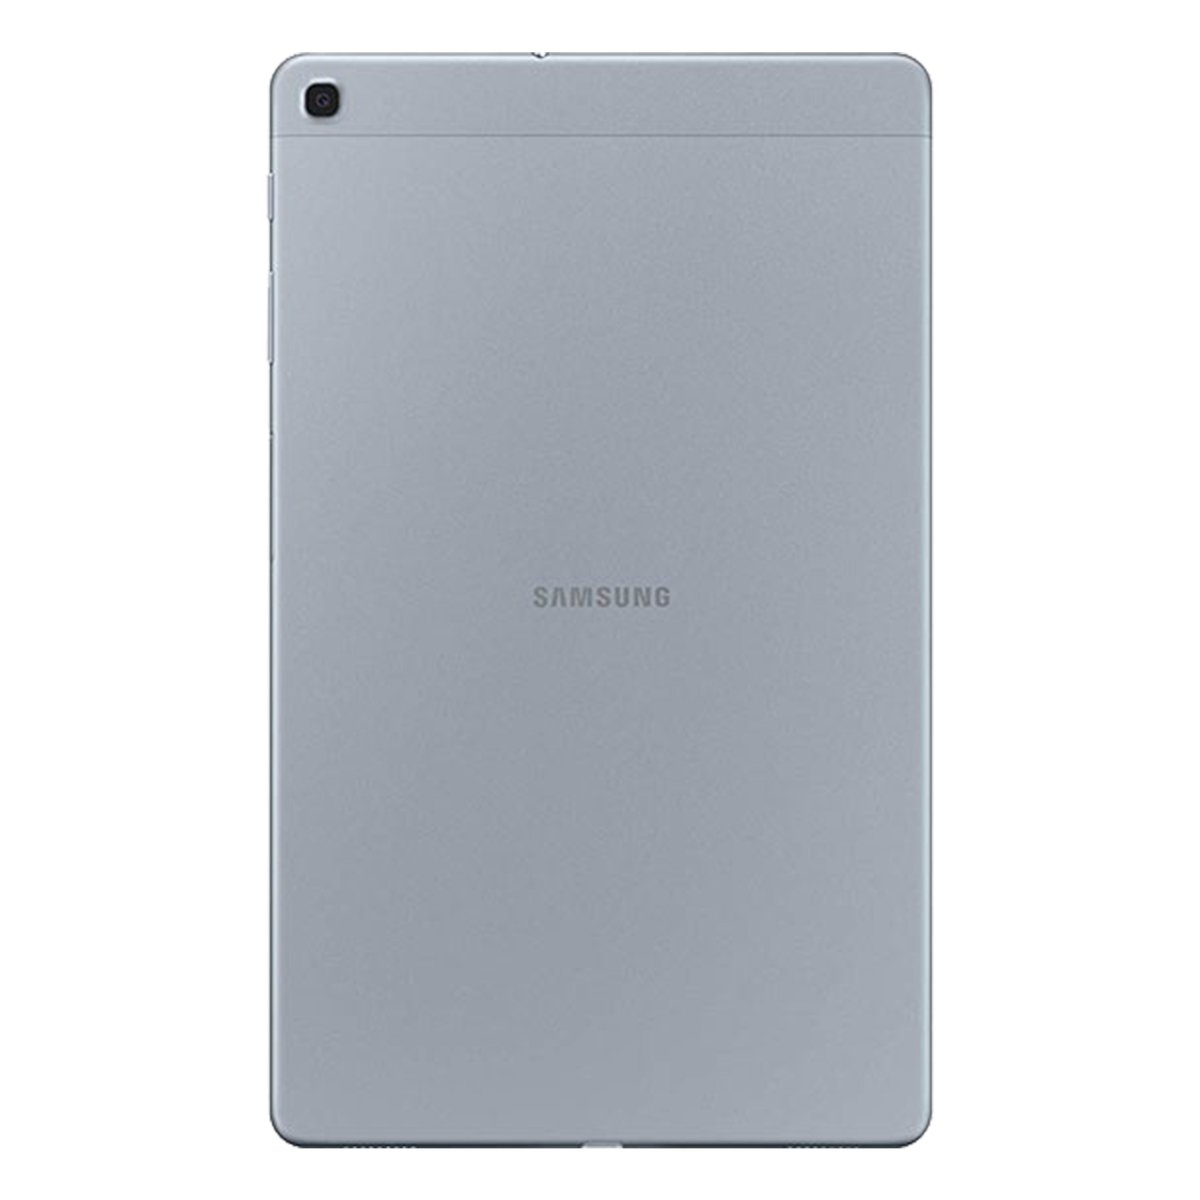 Samsung Galaxy Tab A T515N (2019) 10.1" 4G 32GB Silver